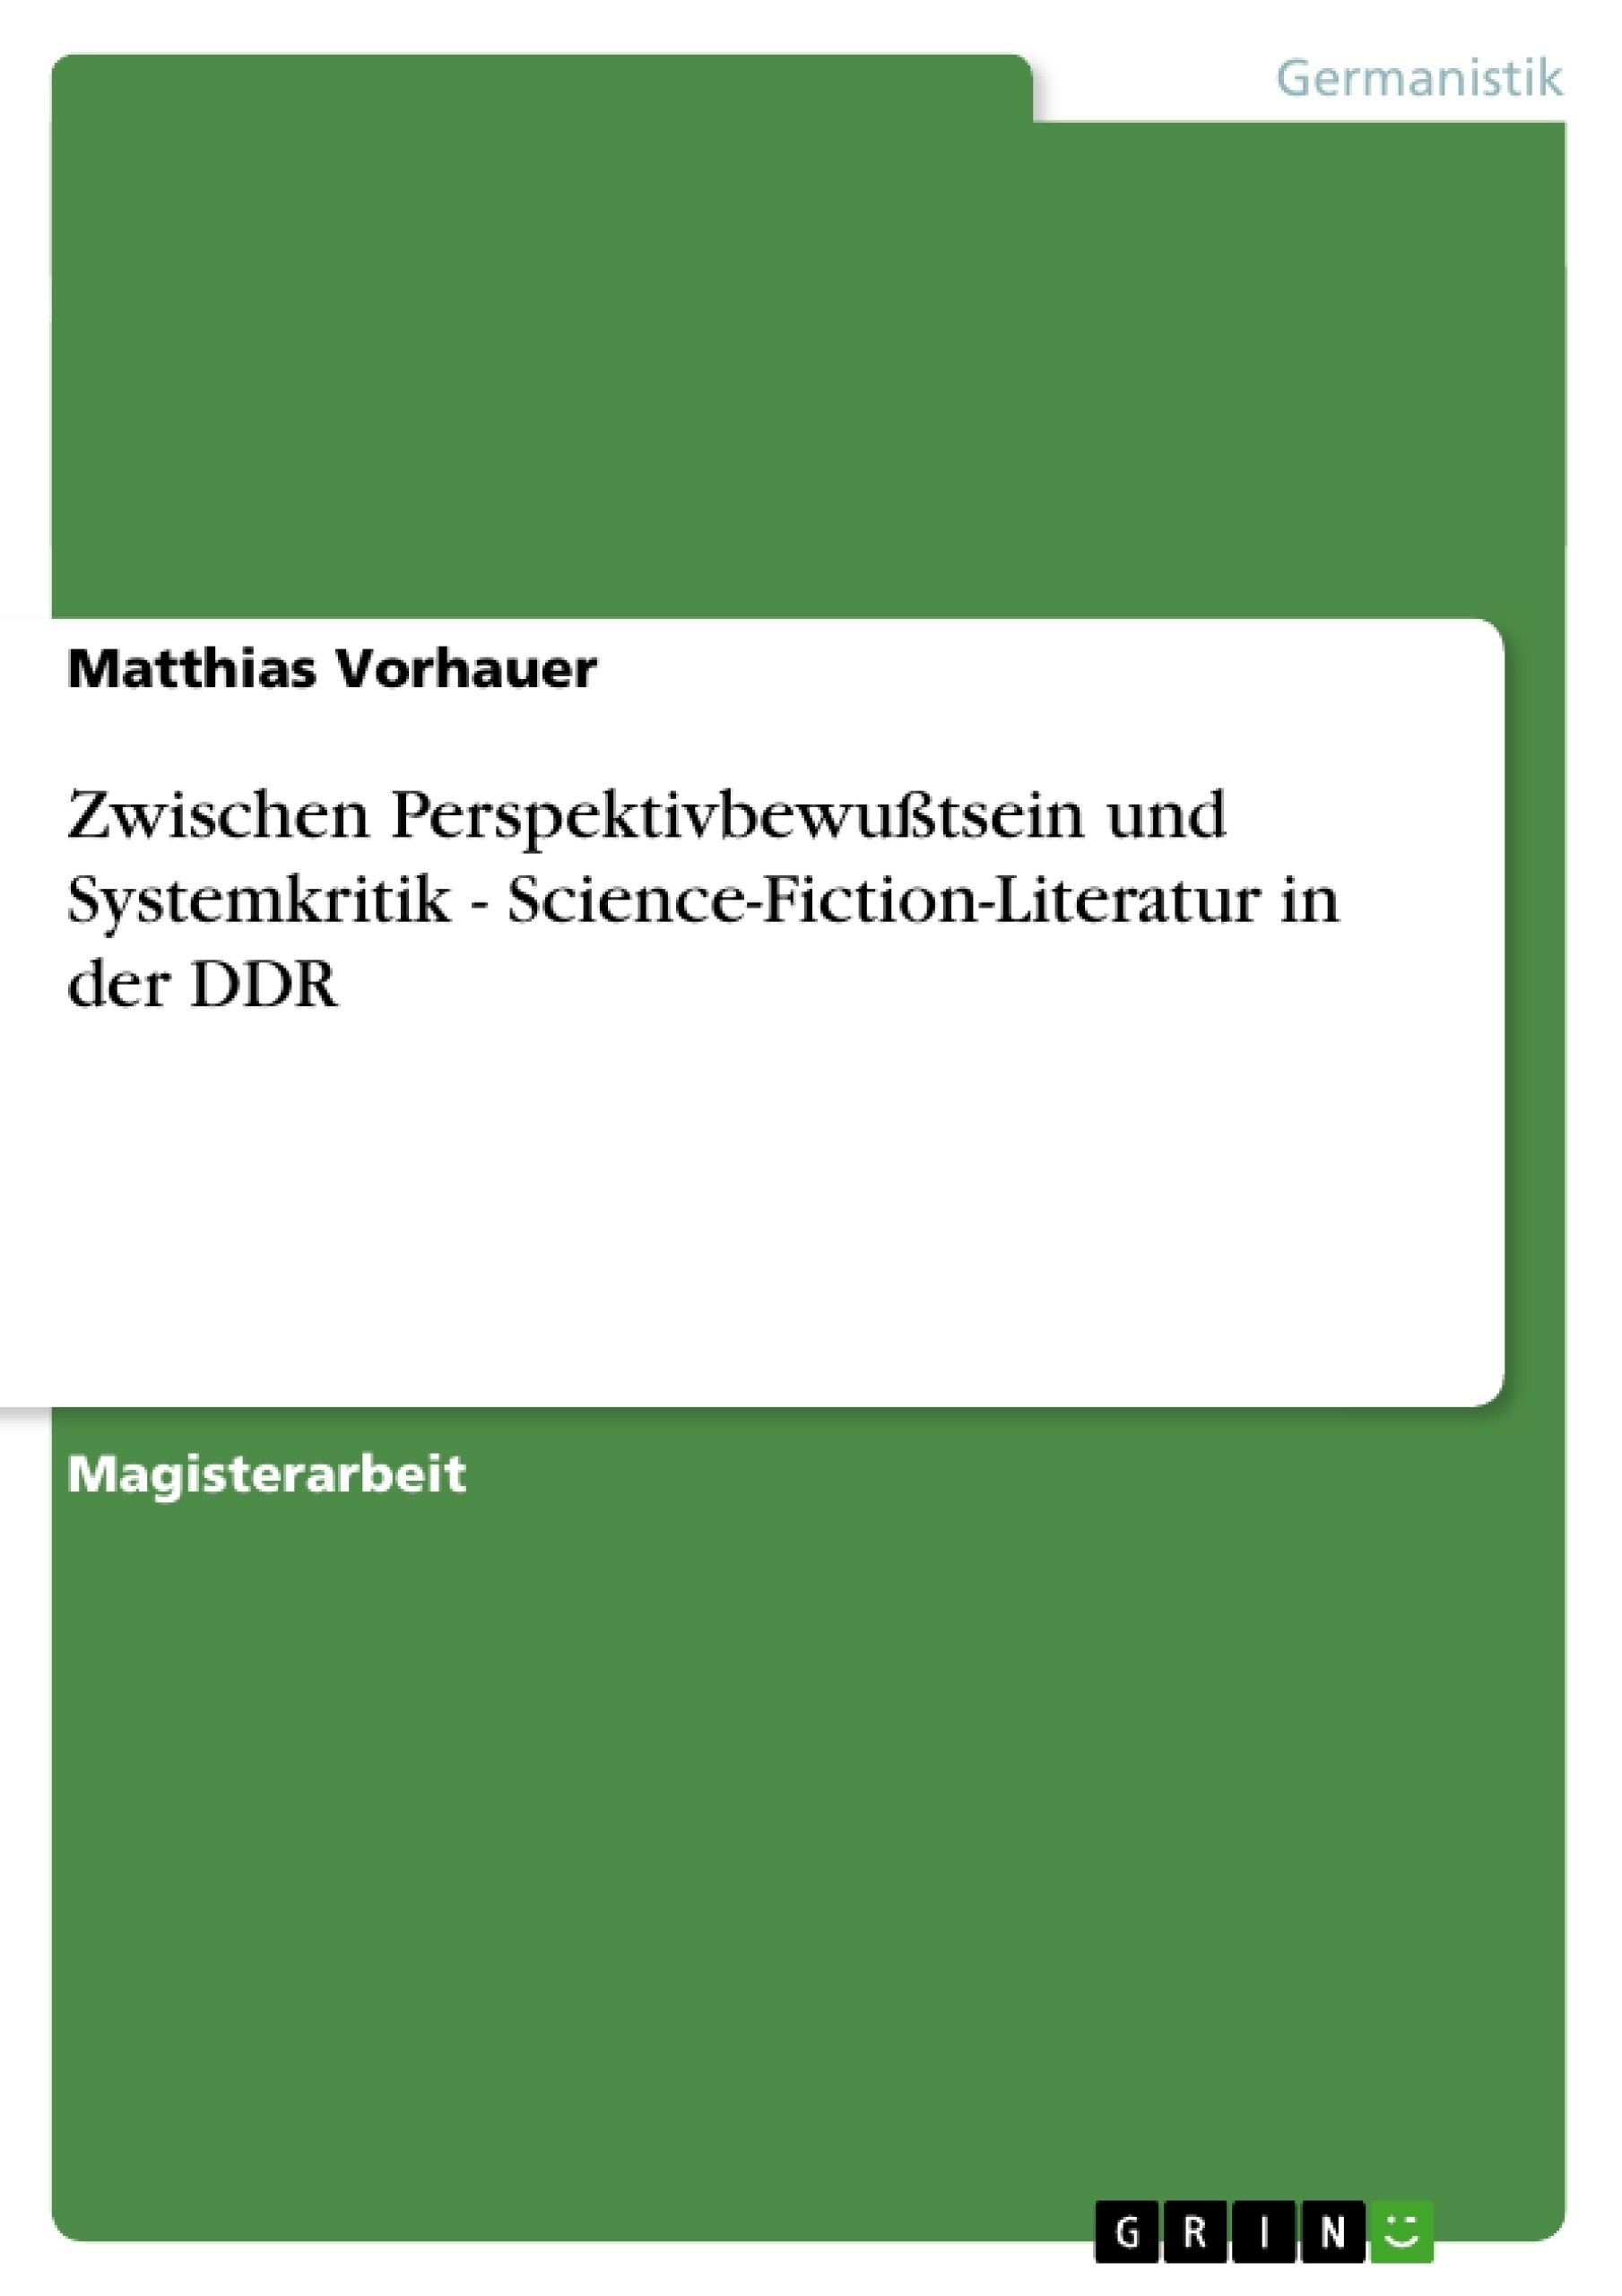 Titel: Zwischen Perspektivbewußtsein und Systemkritik - Science-Fiction-Literatur in der DDR